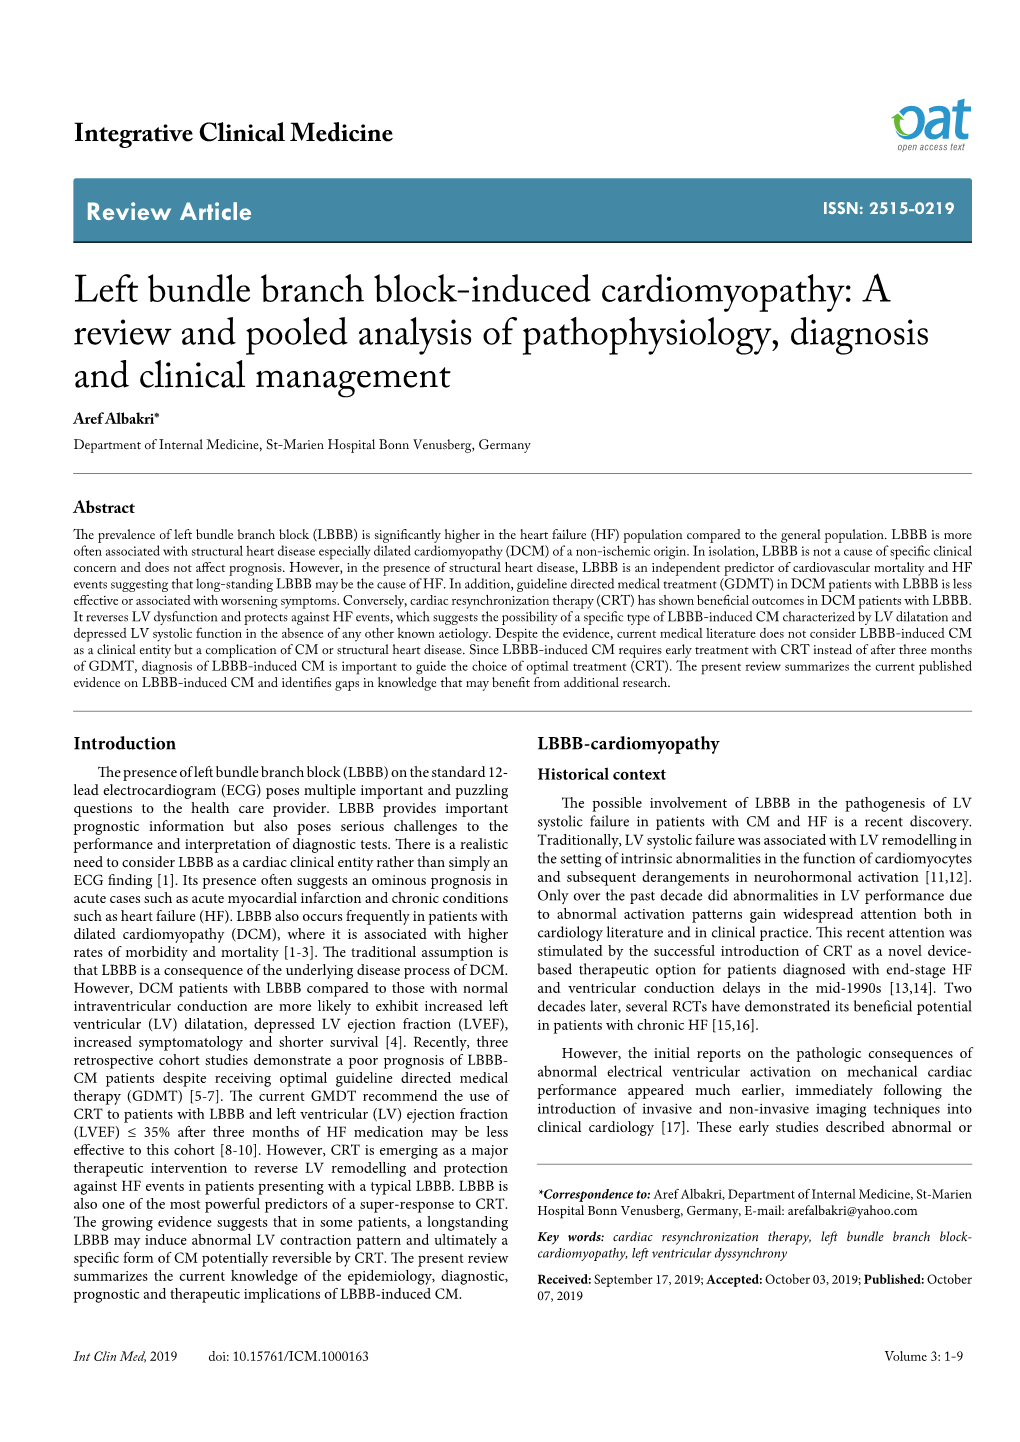 Left Bundle Branch Block-Induced Cardiomyopathy